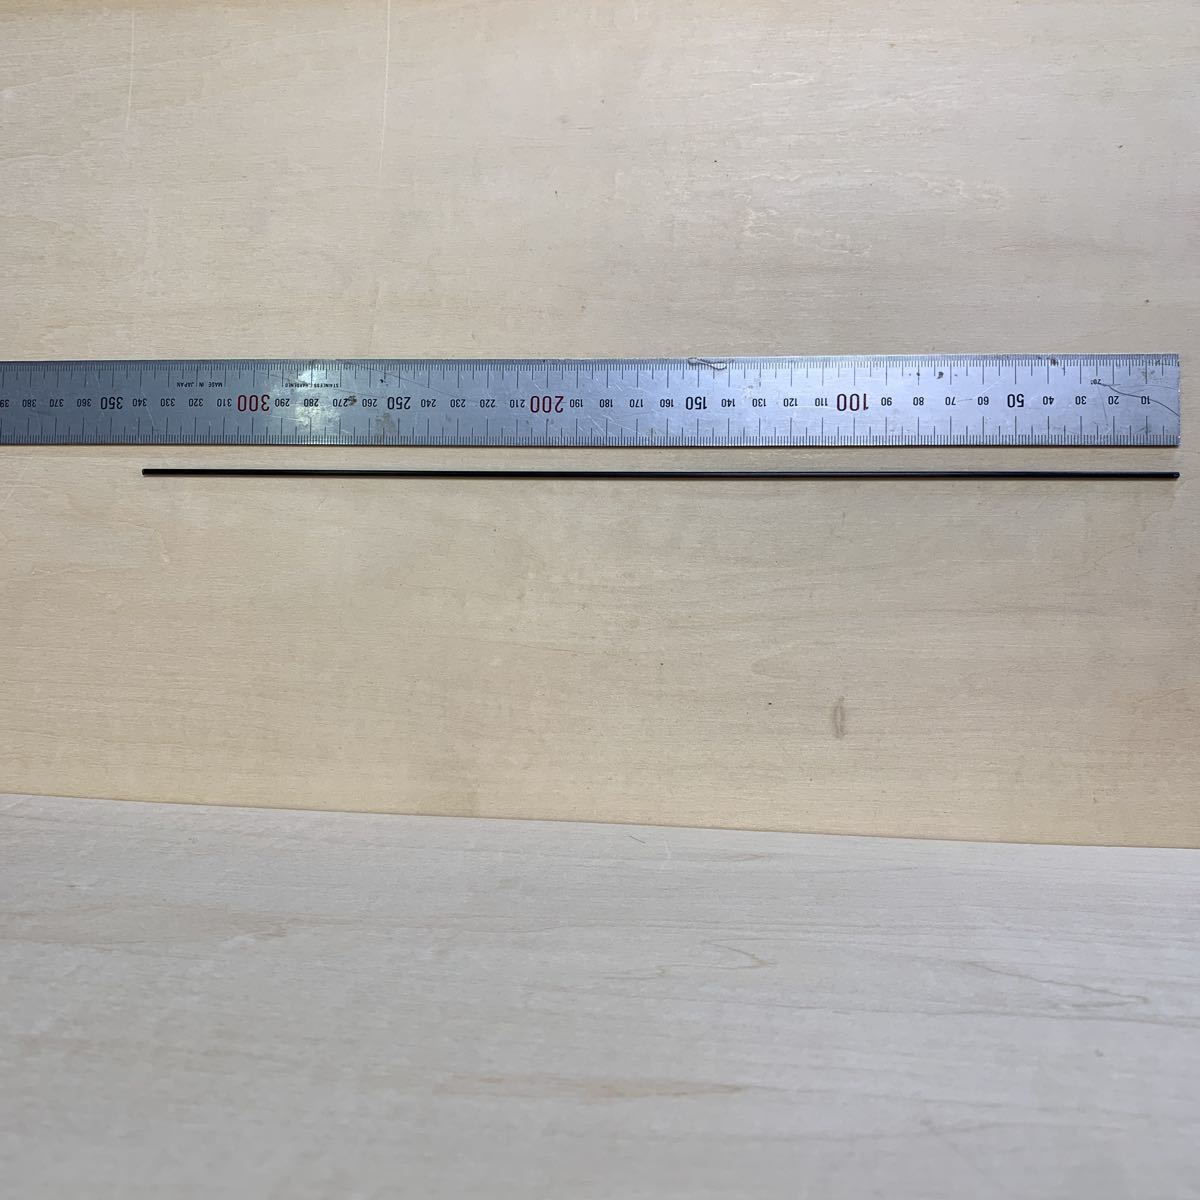  carbon rod stick * outer diameter 2mm length 330mm weight 1.7g..